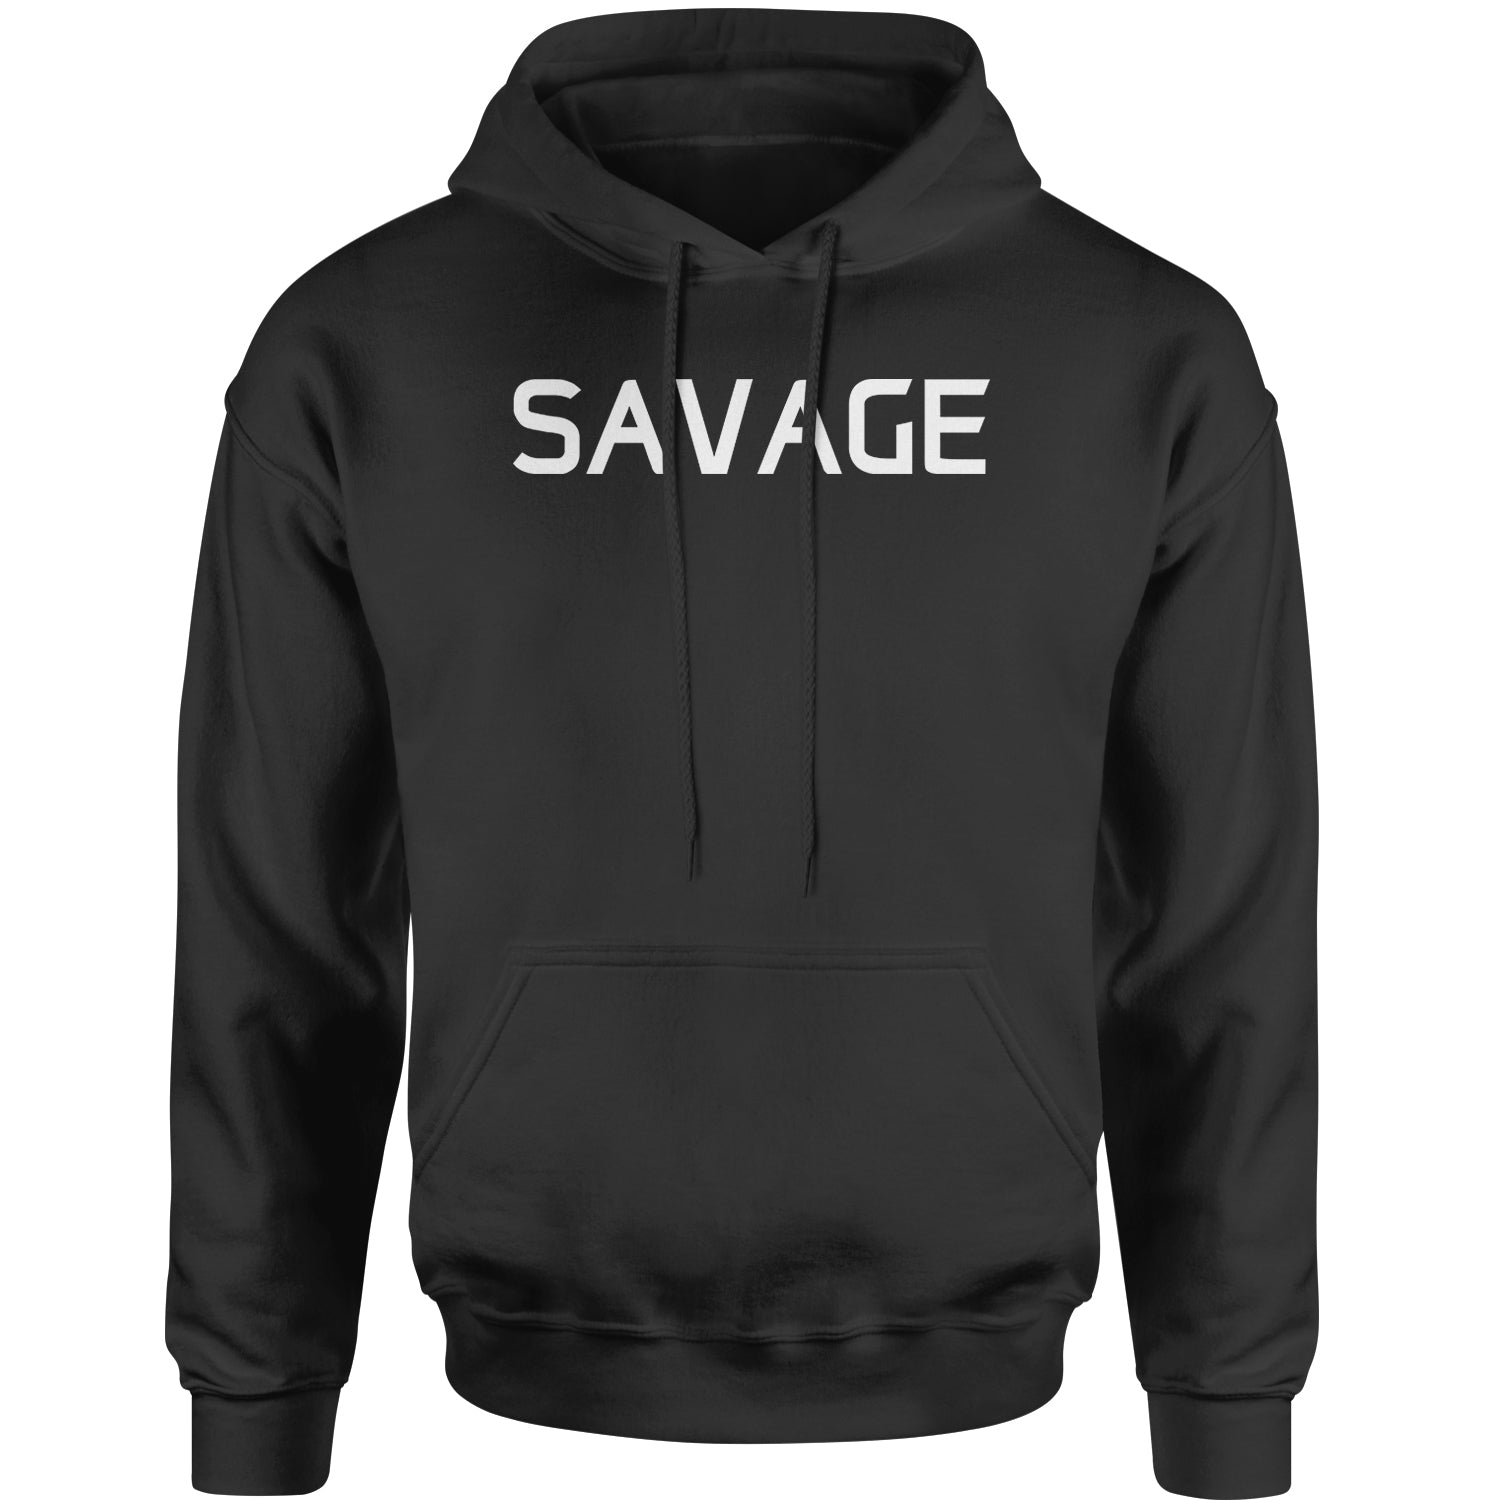 Savage Adult Hoodie Sweatshirt #expressiontees by Expression Tees